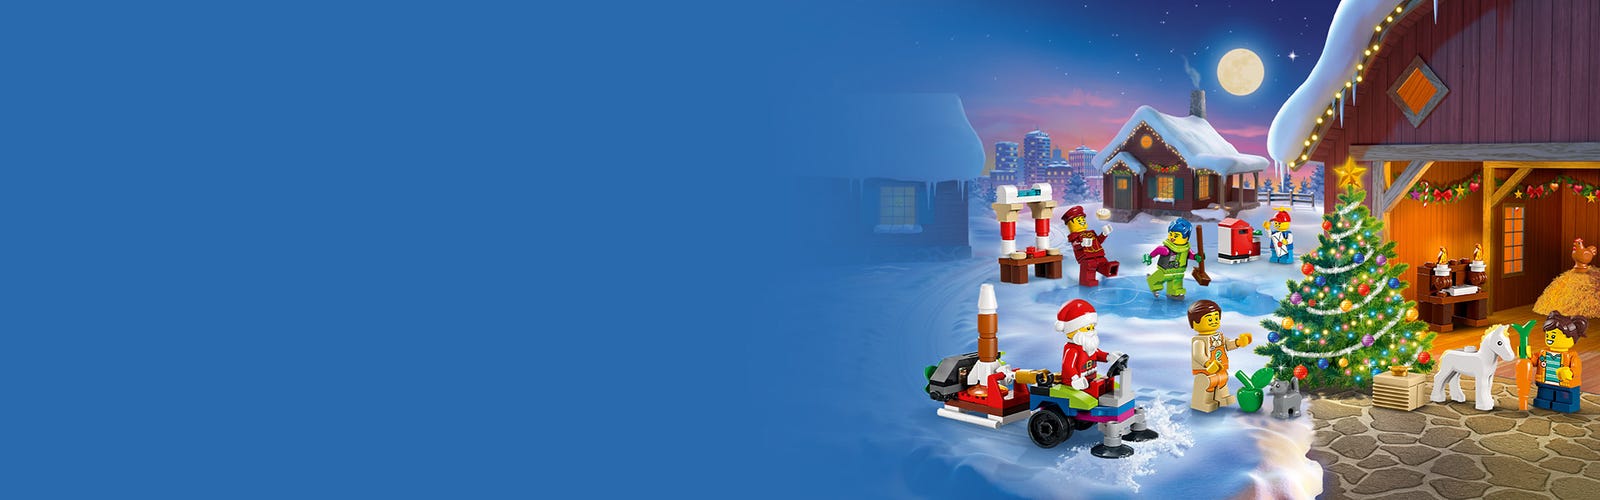 LEGO 60352 City Calendario Dell'Avvento 2022, Costruzioni Regalo A Tema  Natalizio, Giochi Per Bambini, Minifigure Di Babbo Natale E Tappetino Da  Gioco, Multicolore : : Giochi e giocattoli